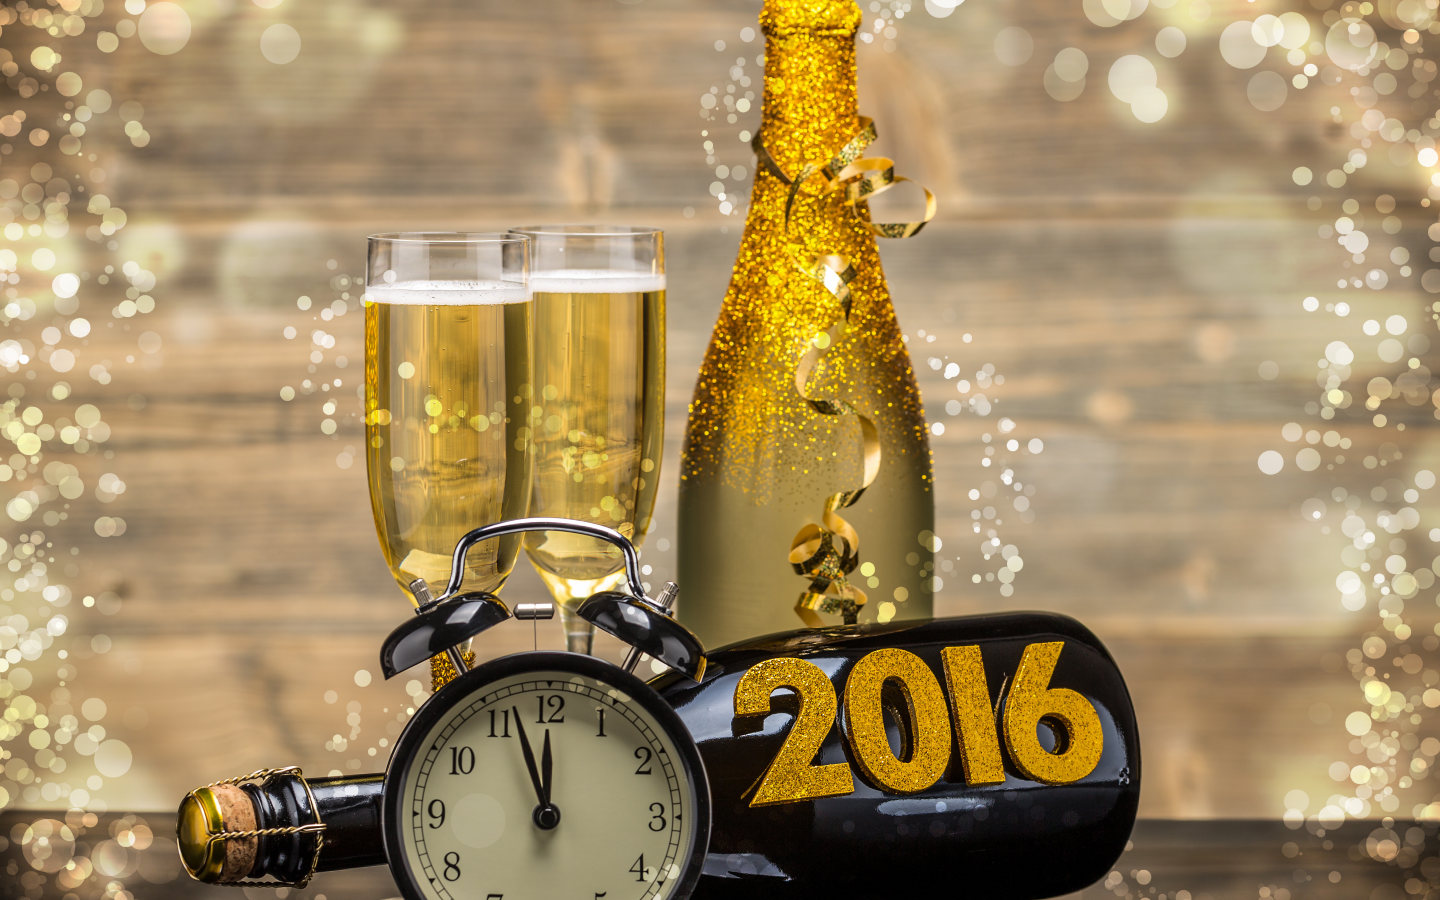 2016, шампанское, бокалы, праздник, новогодние обои